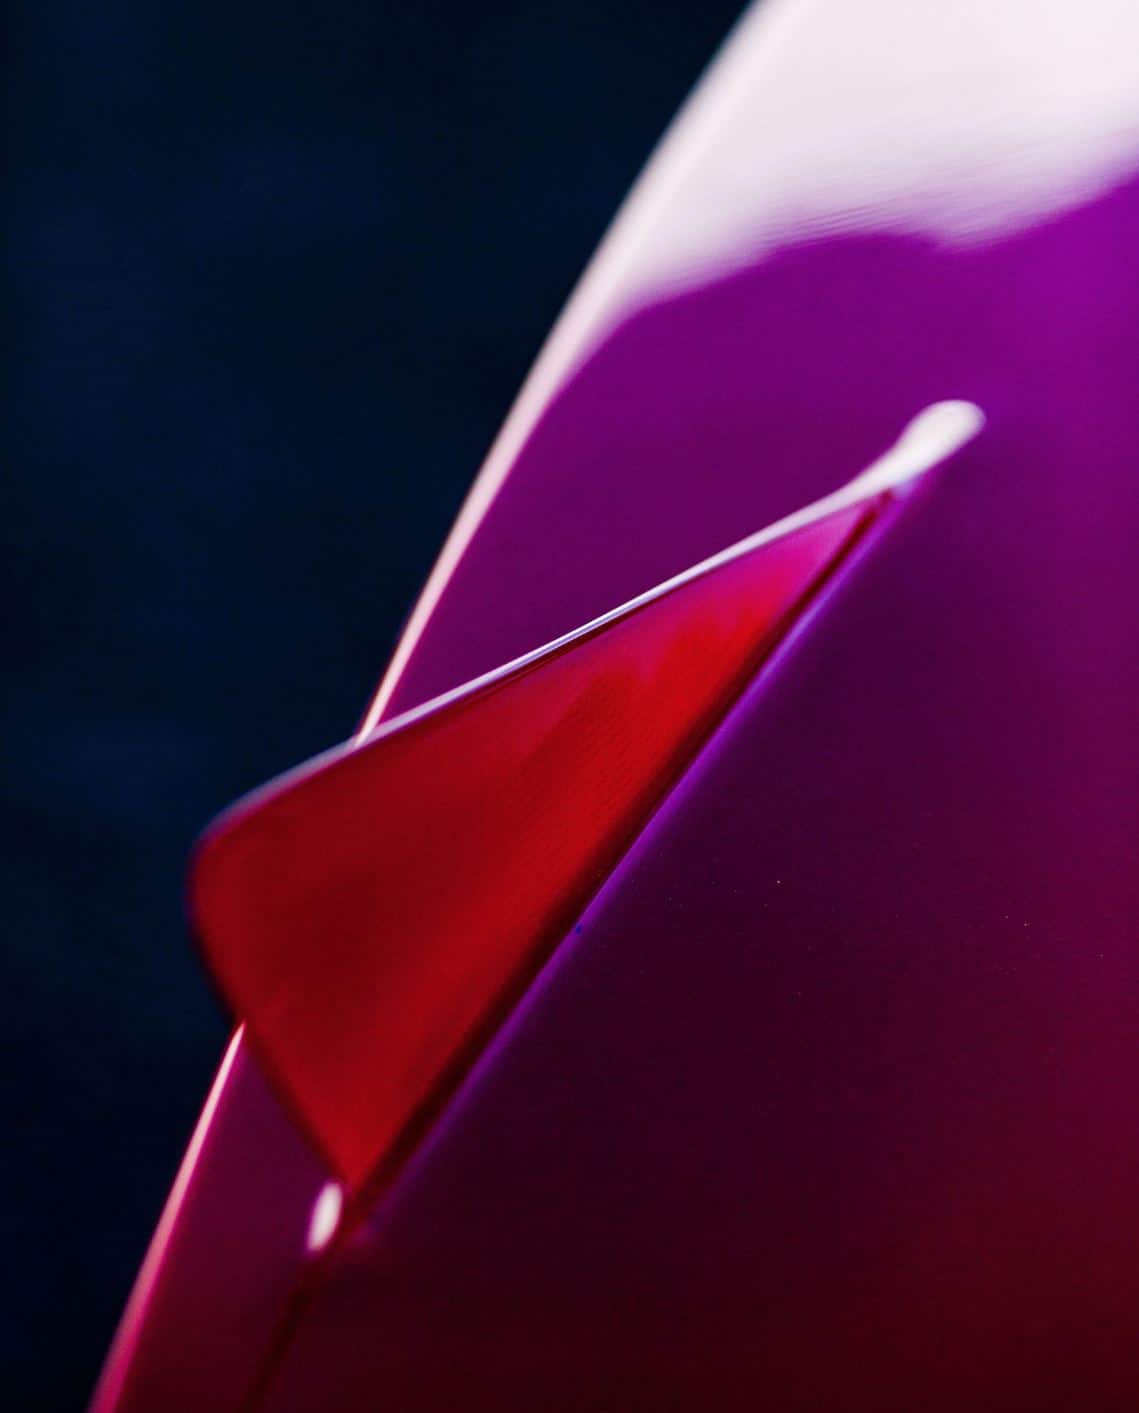 Shapers-Club- Gros plan d'une surface d'aileron de surf, rouge et incurvée se transformant en une zone violette, montrant un contraste saisissant de couleurs avec un accent net sur le bord des ailerons de surf. -surfshop-surfboard